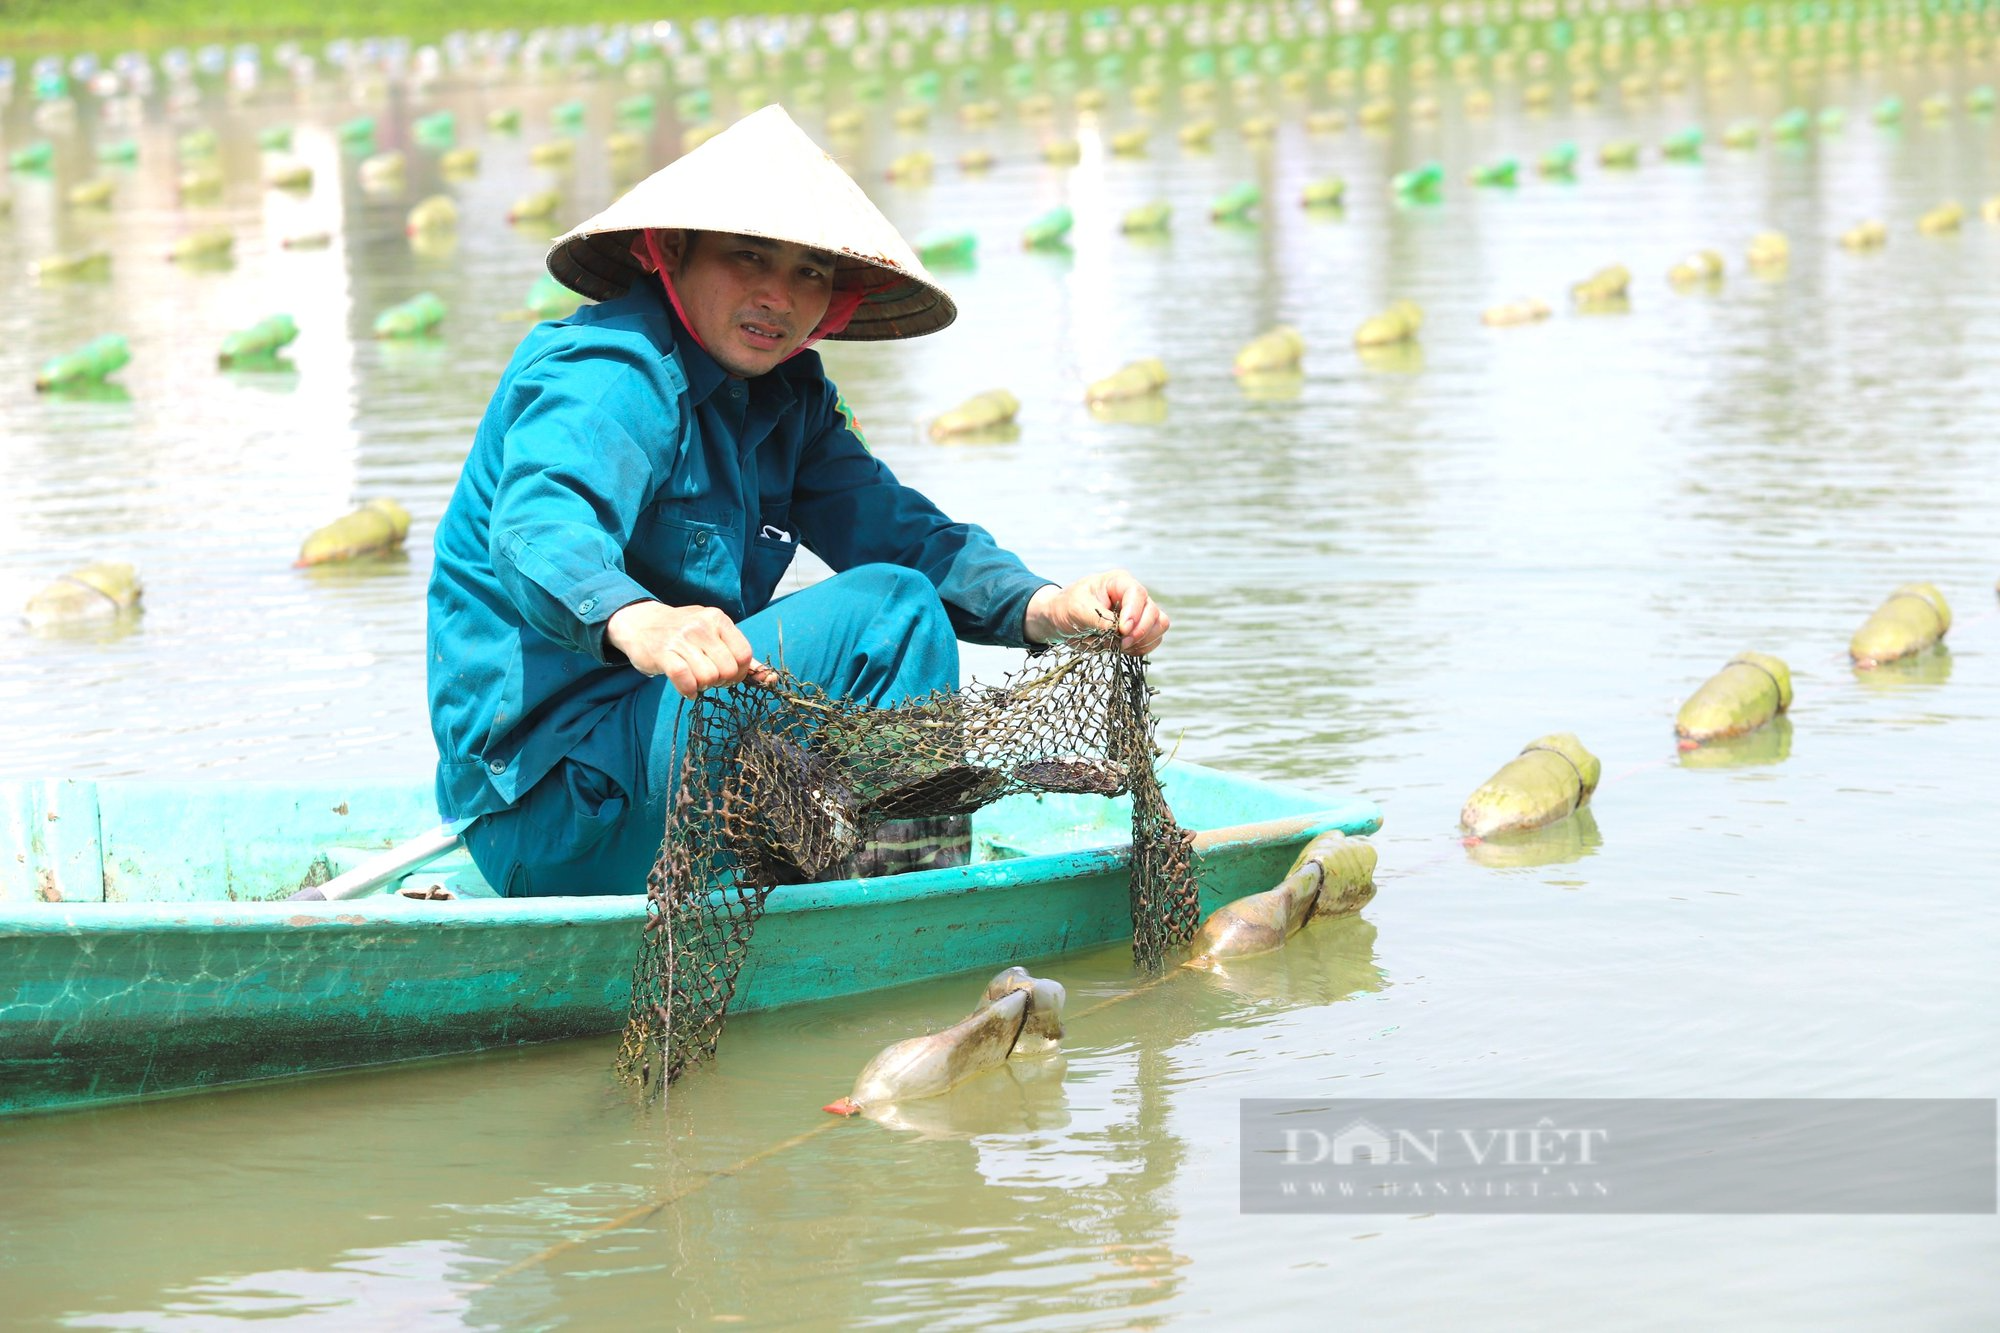 Lần đầu tiên nuôi trai lấy ngọc, nông dân Hà Tĩnh thu về hàng trăm triệu mỗi năm - Ảnh 4.